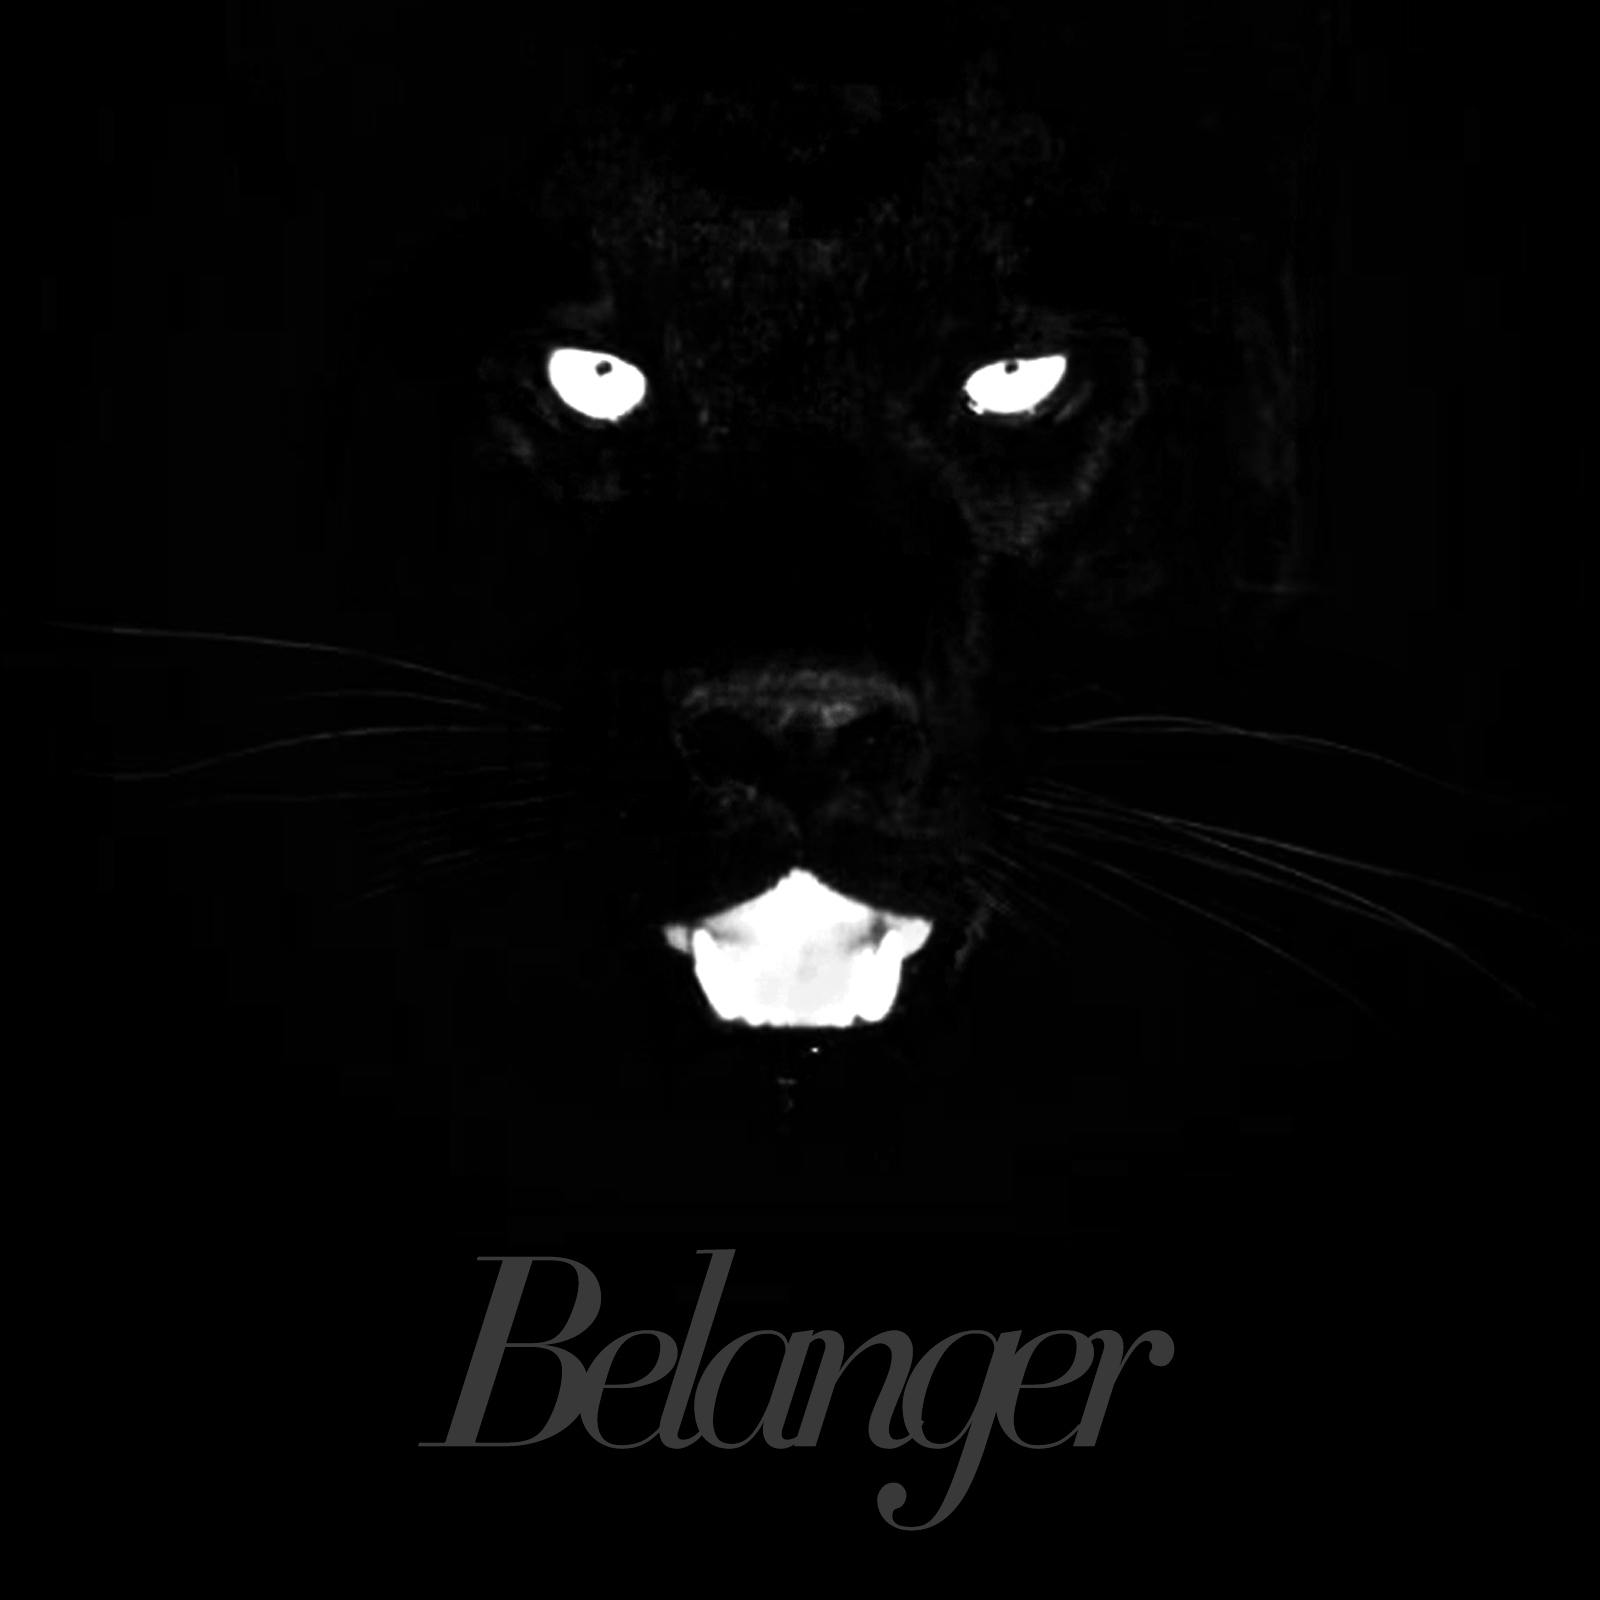 Belanger // Calico